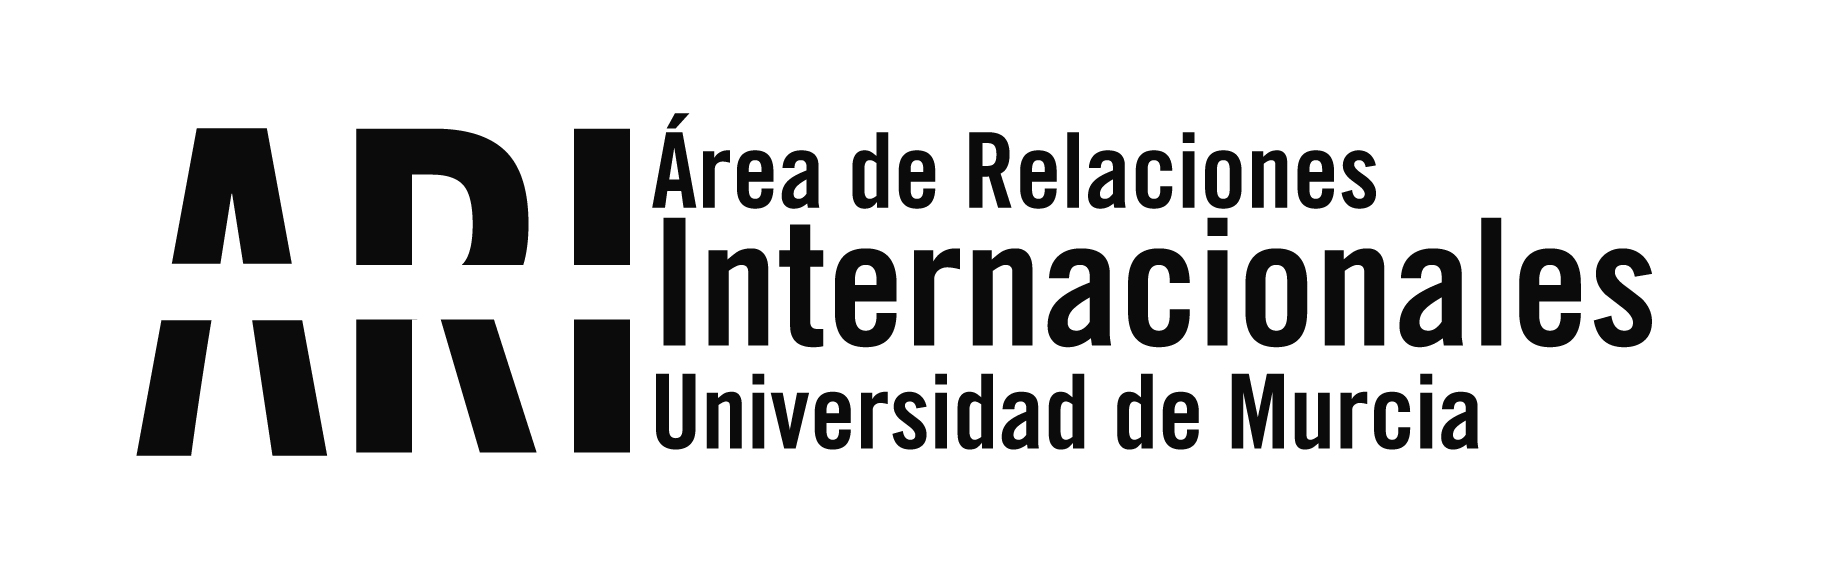 Bienvenida Universidad de Murcia Internacional 2015-16 - Área de Relaciones Internacionales